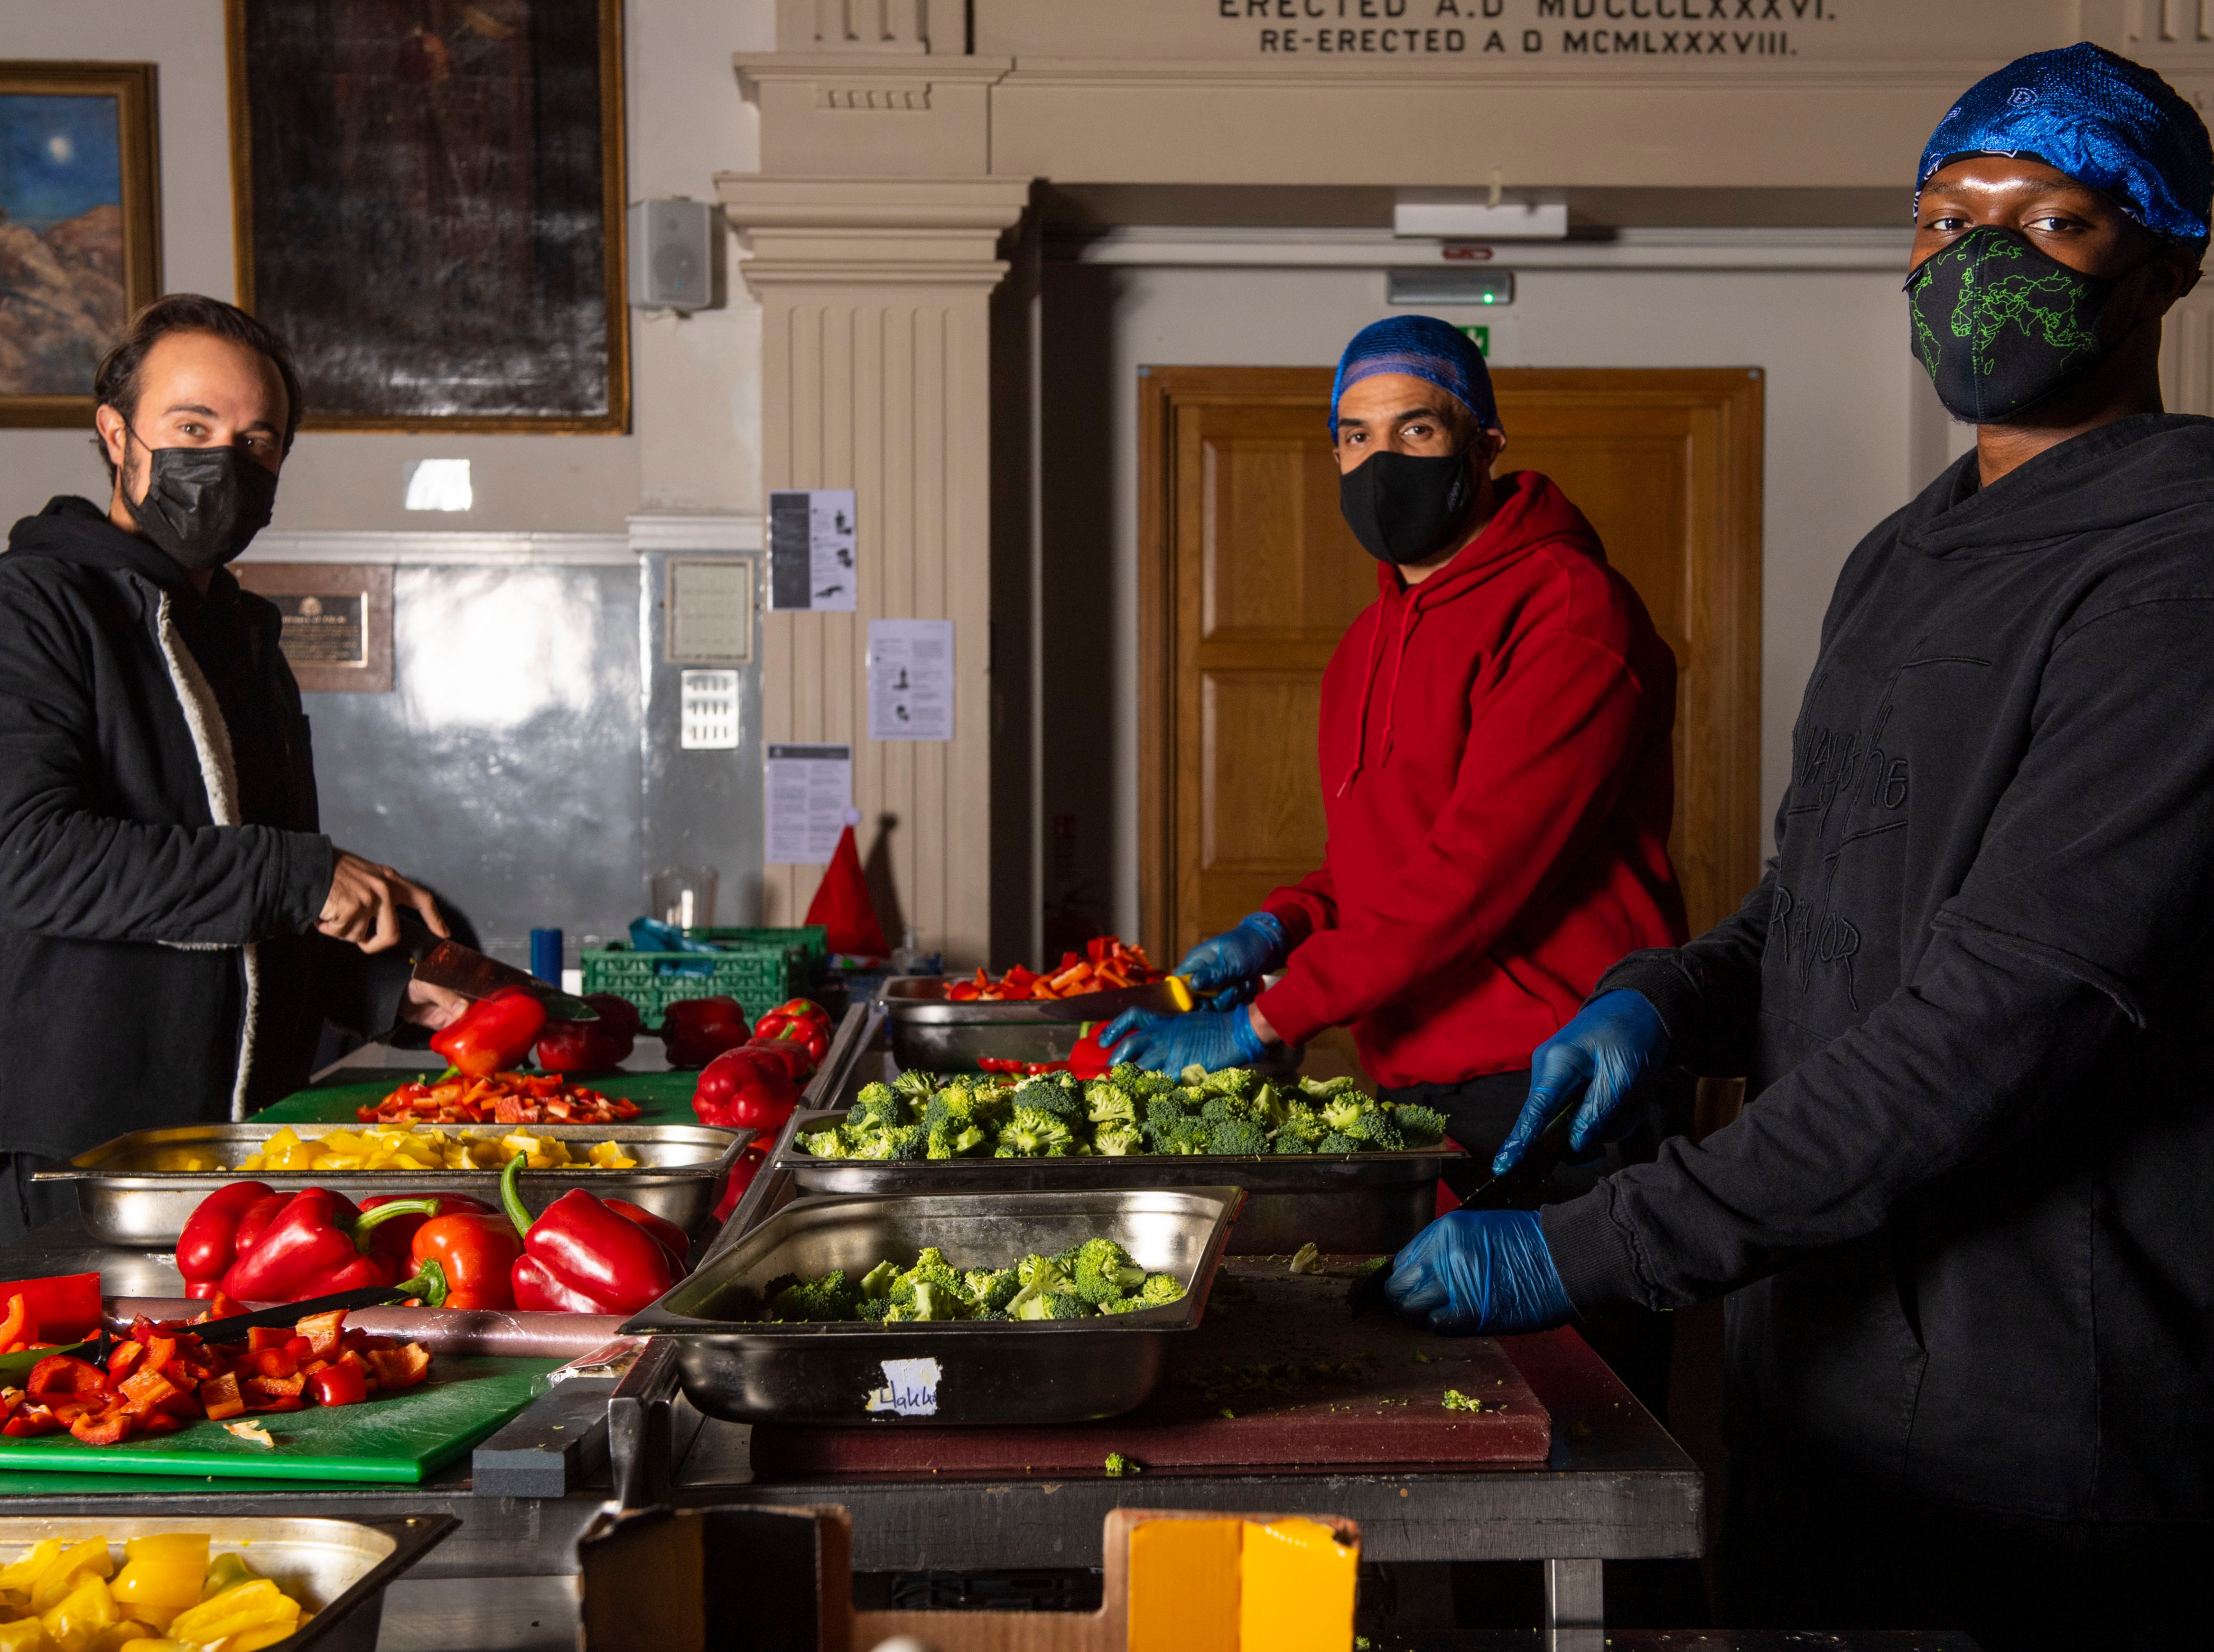 Evgeny Lebedev, Craig David and KSI prepare meals at Scottish House, Westminster